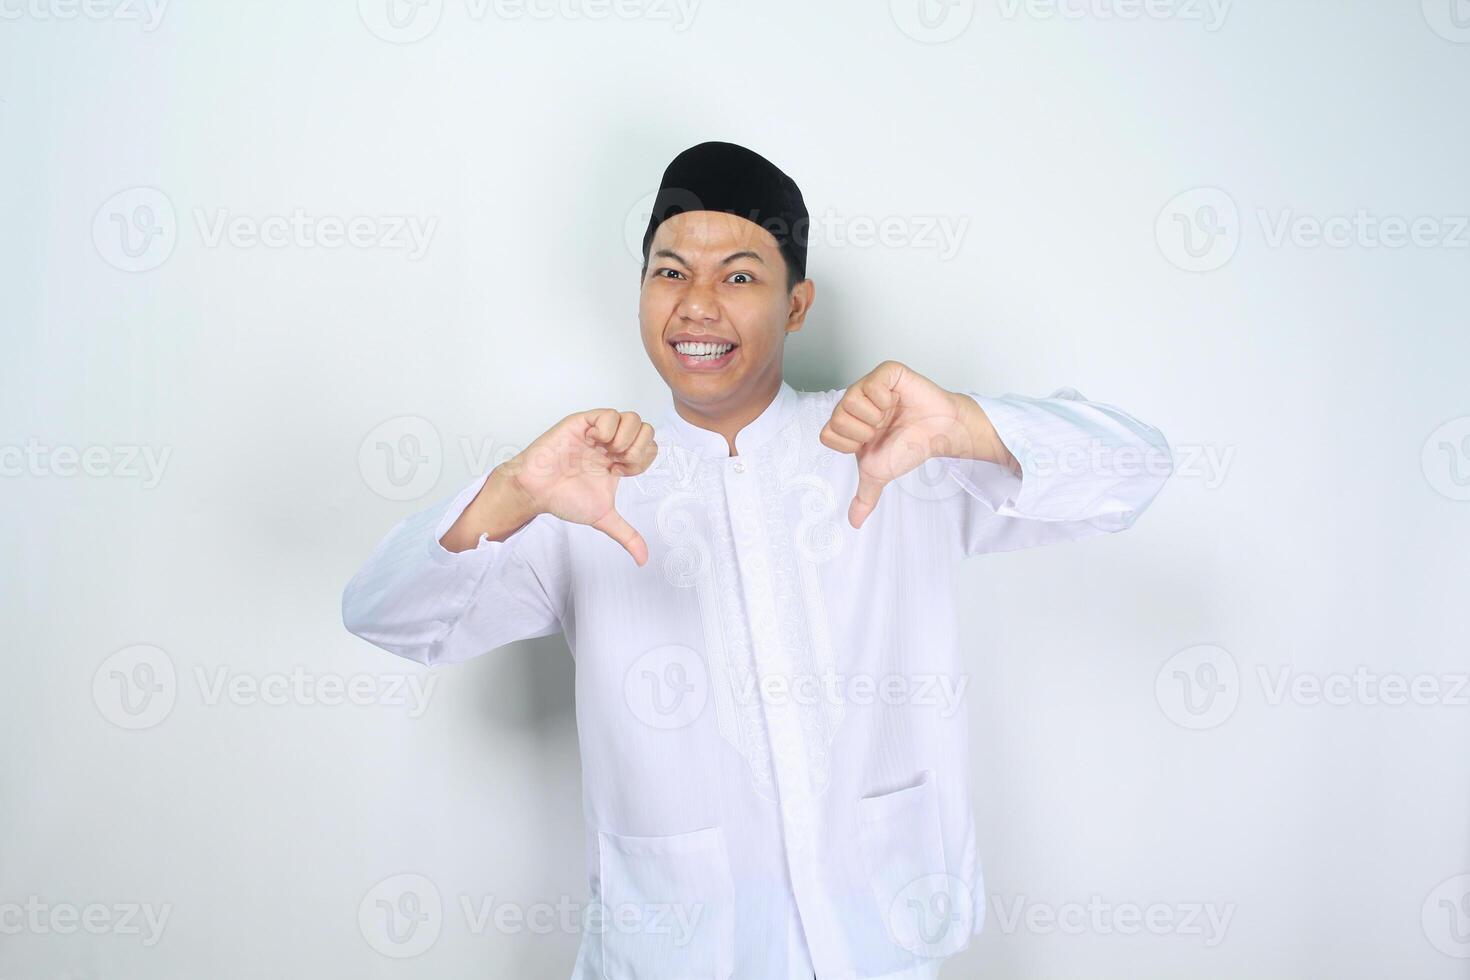 marrant musulman asiatique homme donnant les pouces vers le bas isolé sur blanc Contexte photo